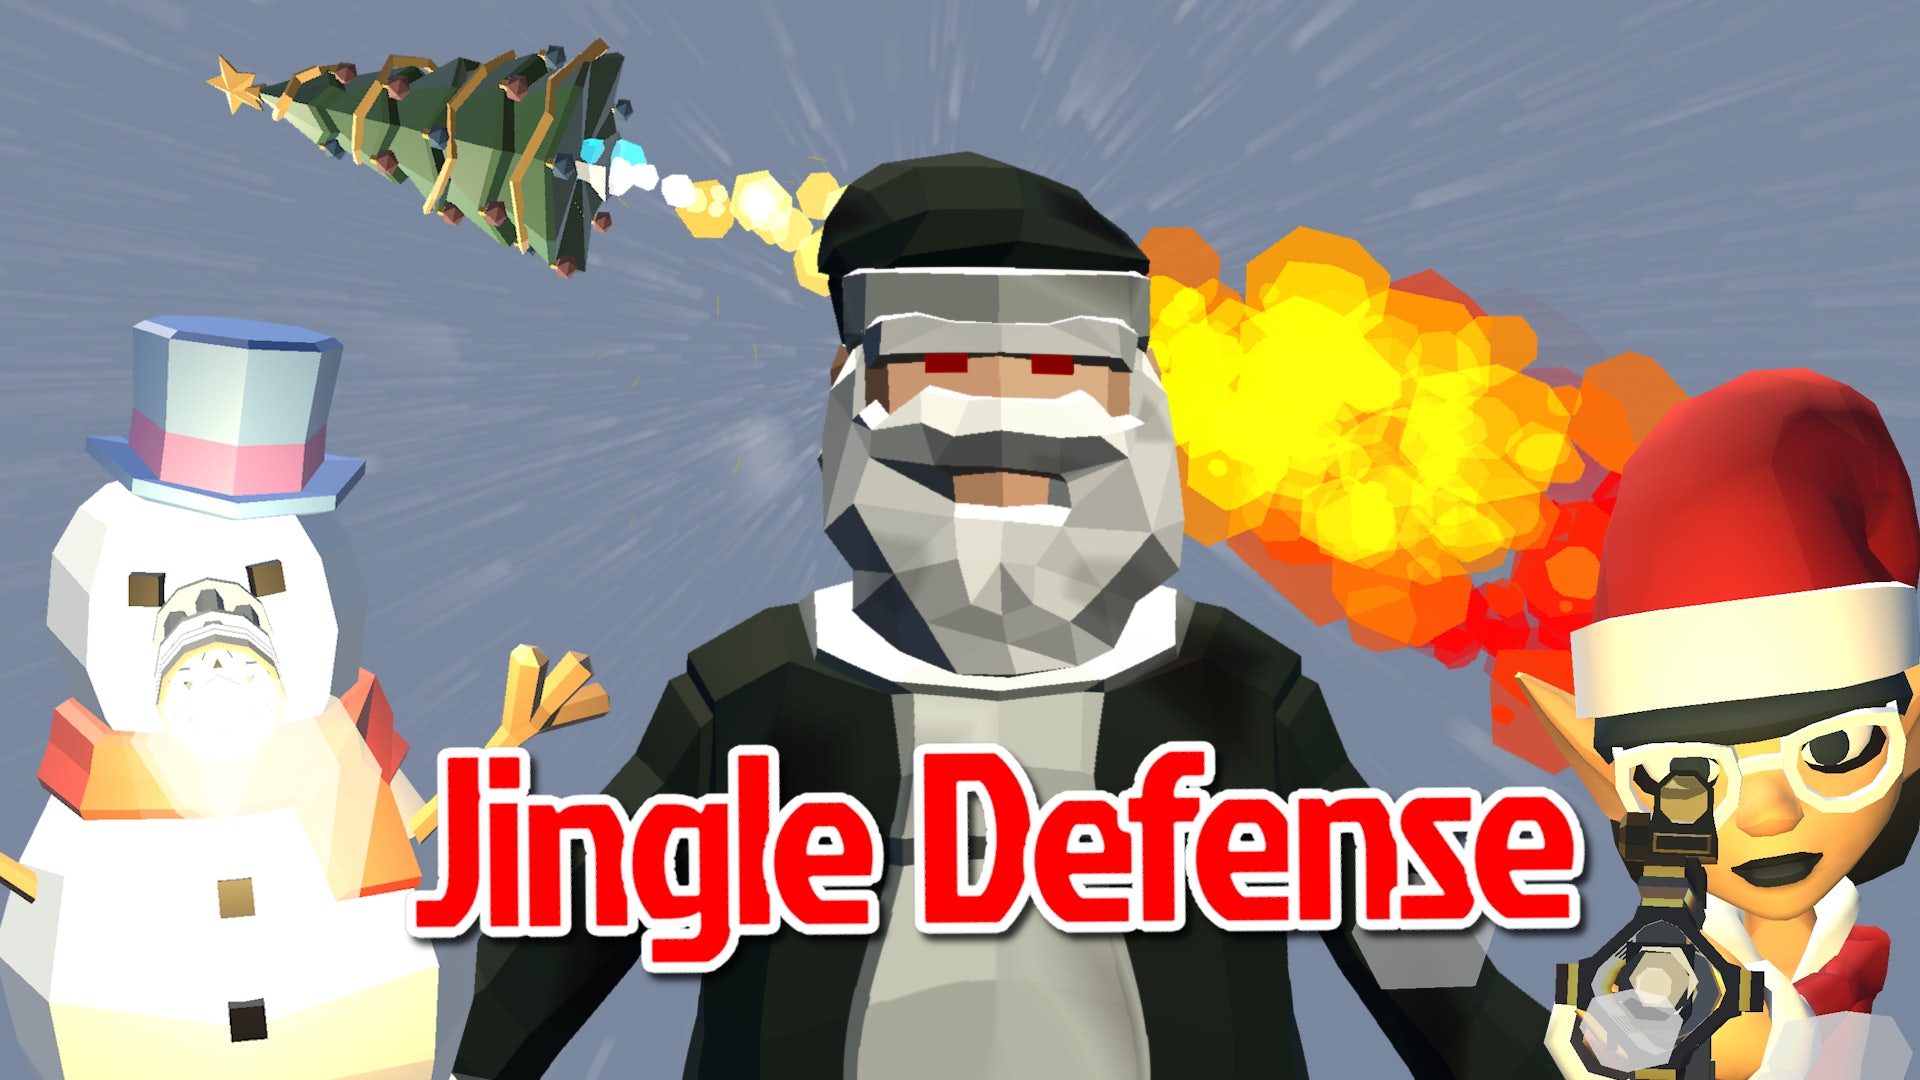 Jingle Defense